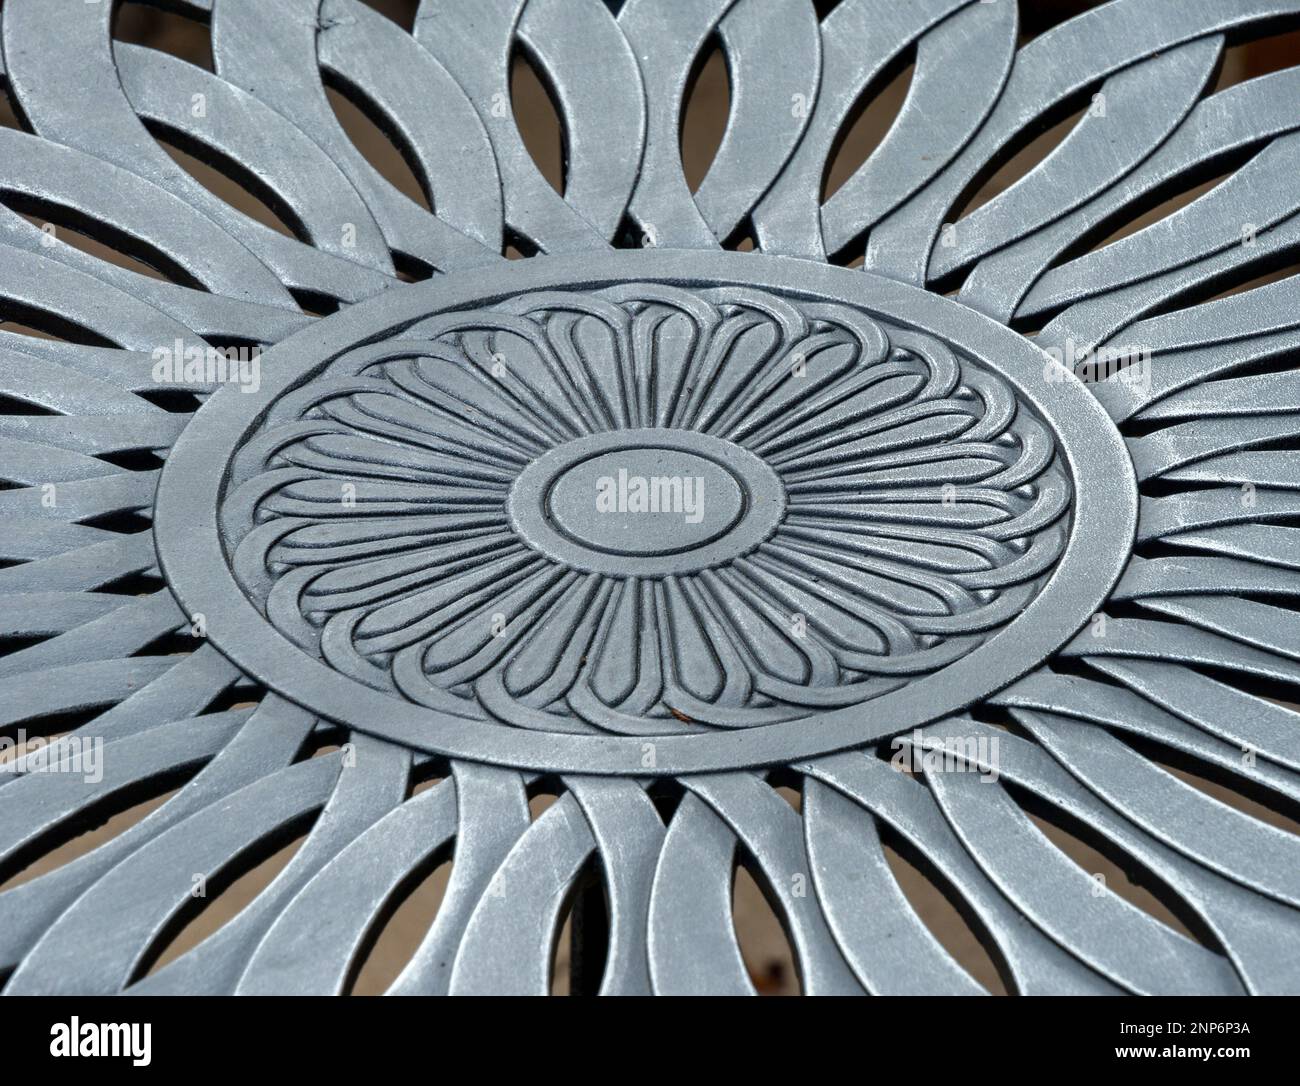 Photo en gros plan montrant le détail du motif floral sur le dessus de table de jardin en métal moulé. Banque D'Images